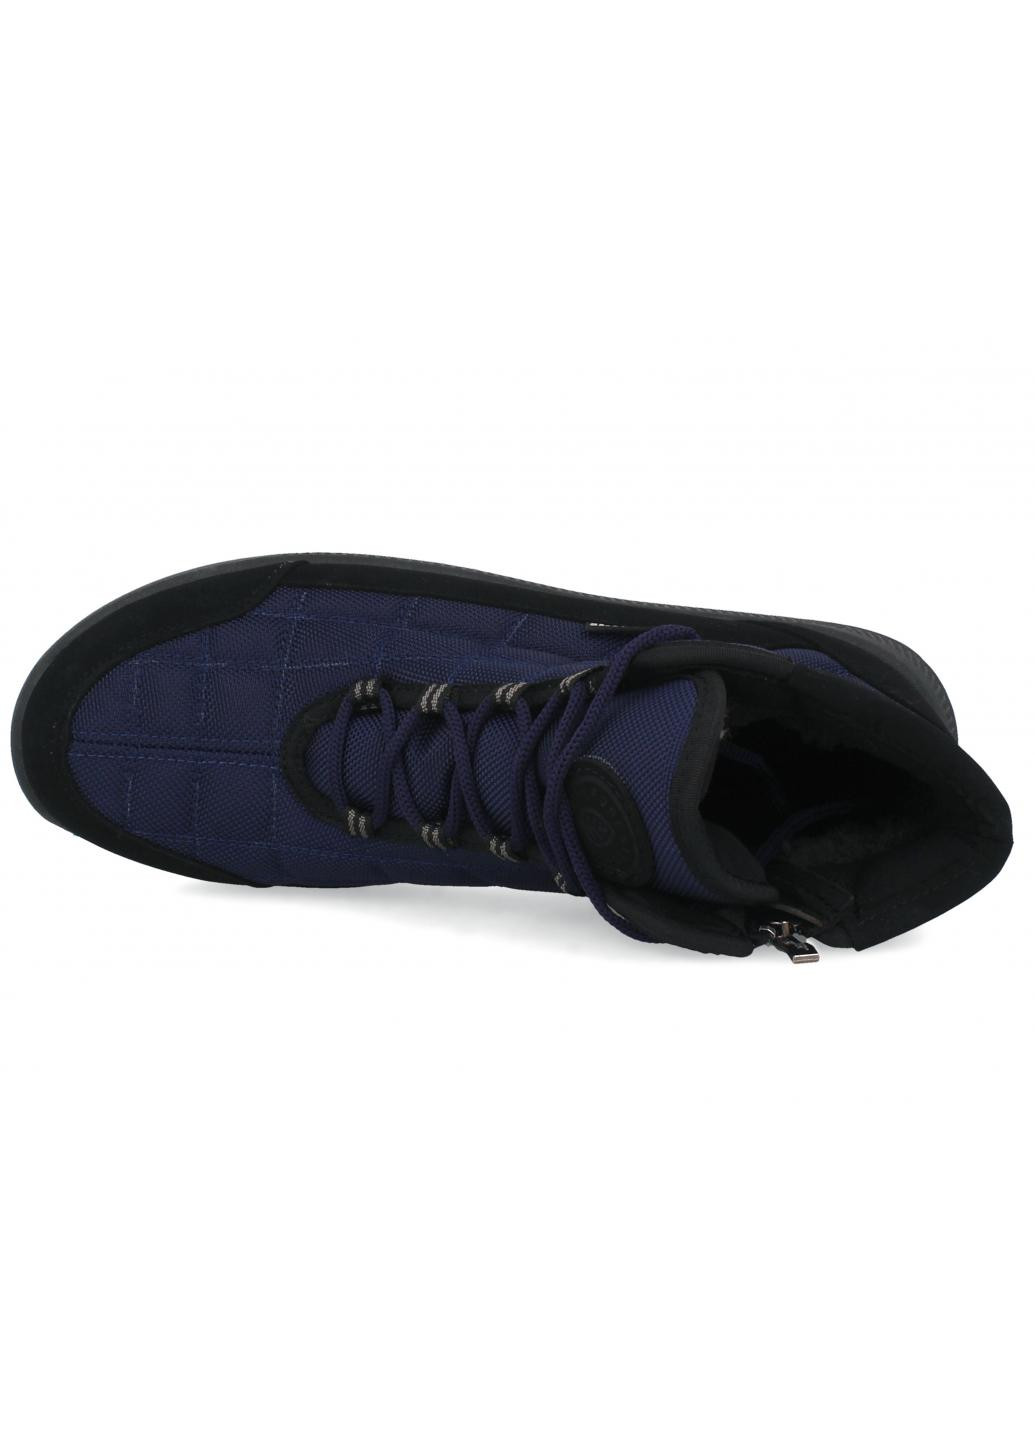 Темно-синие осенние ботинки мужские форестер Forester